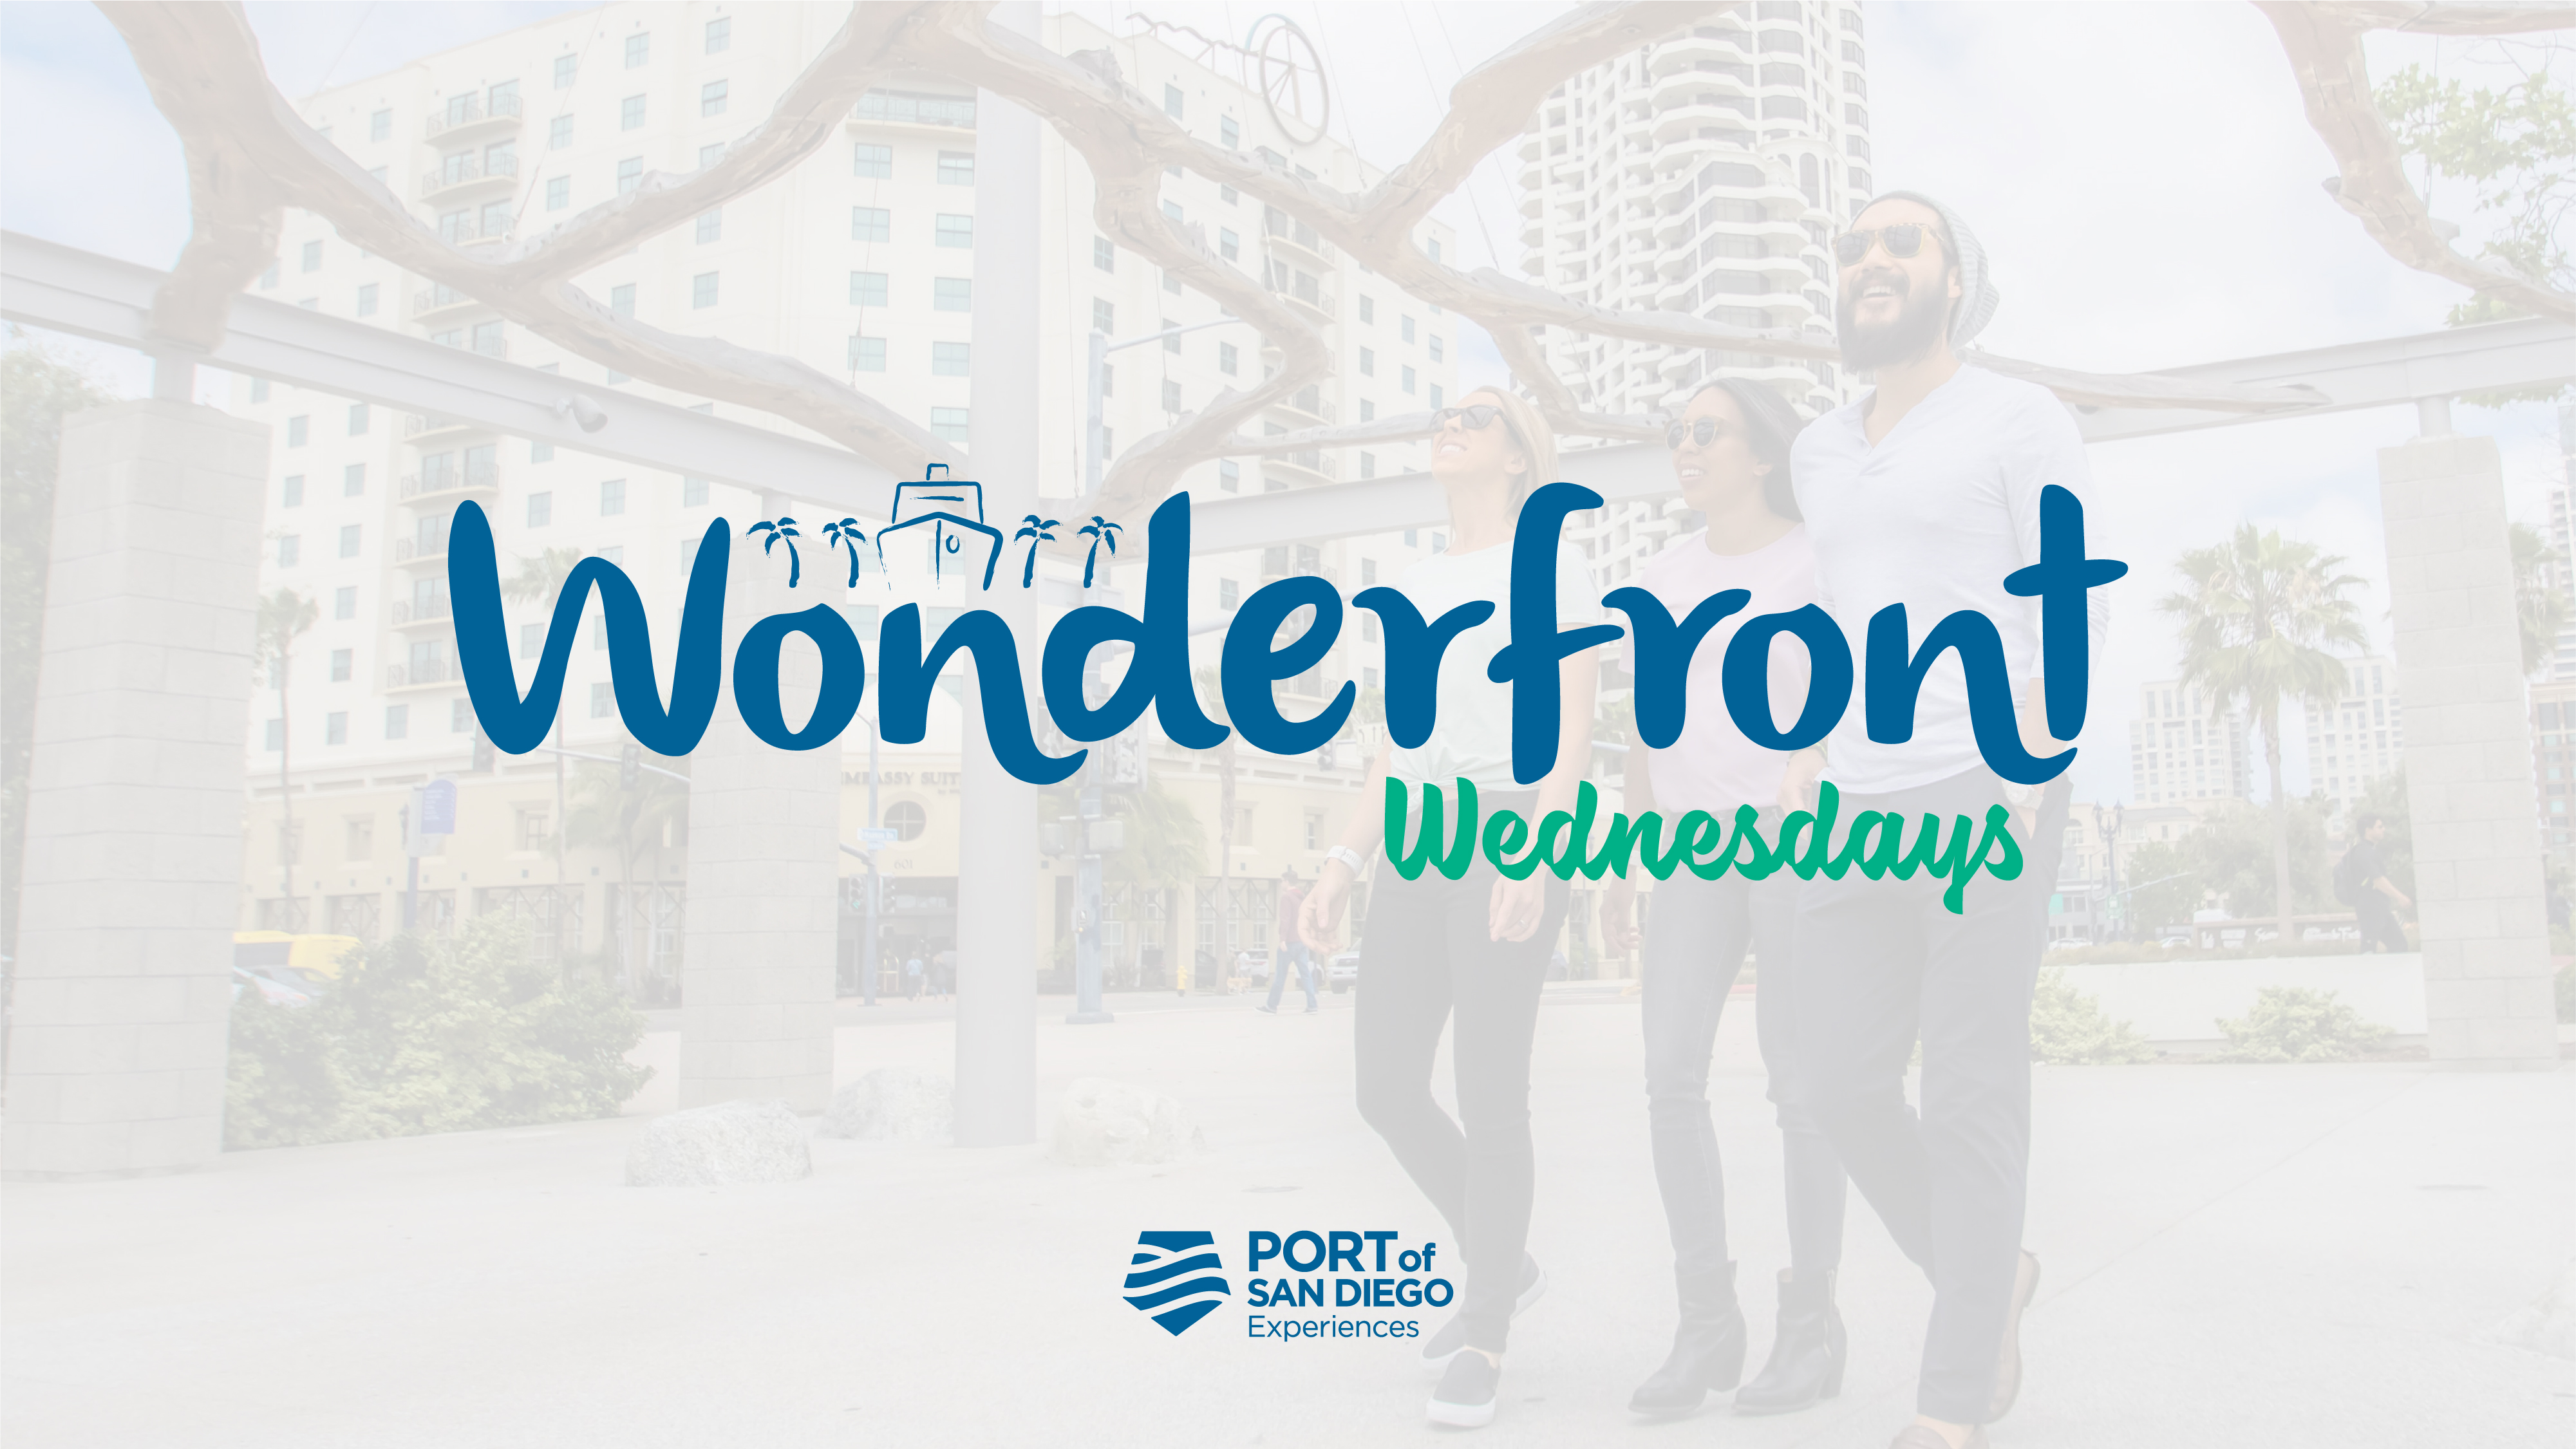 Wonderfront Wednesdays wordmark graphic